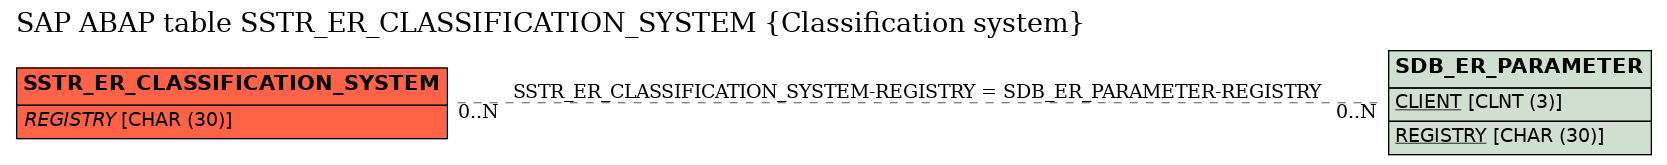 E-R Diagram for table SSTR_ER_CLASSIFICATION_SYSTEM (Classification system)